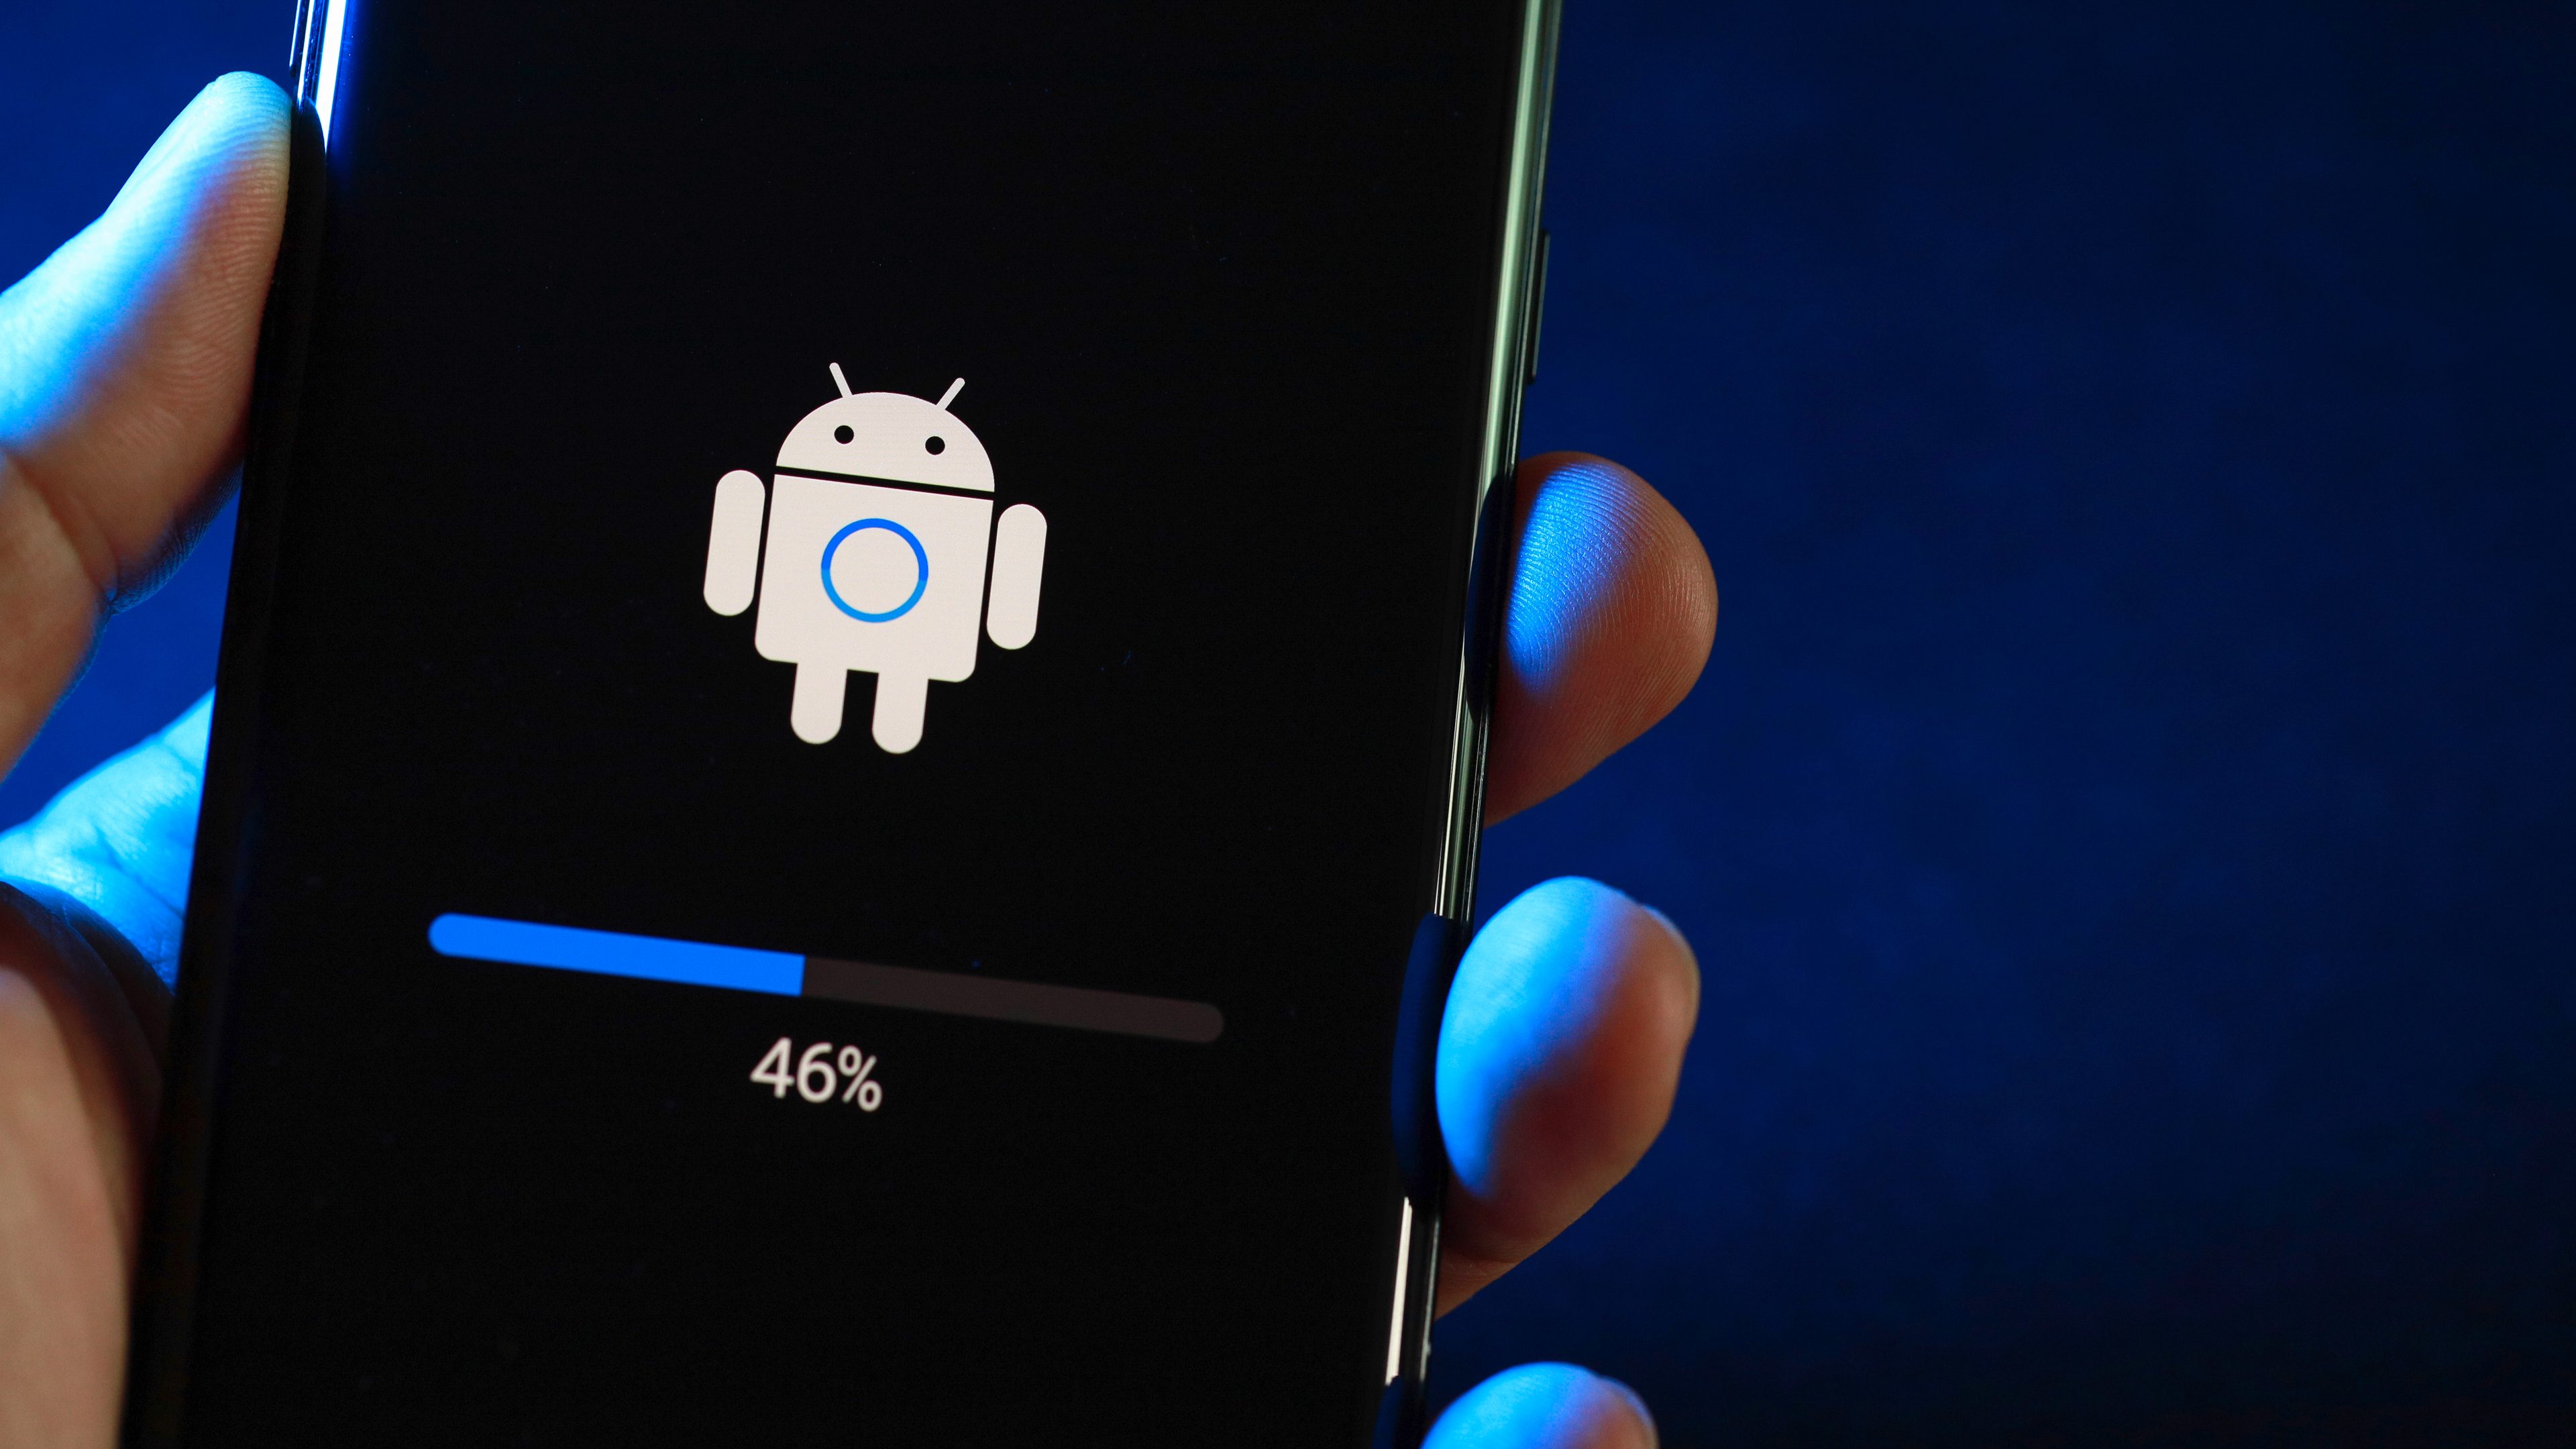 Samsung Des mises à jour Android encore plus rapides à l'avenir? nextpit